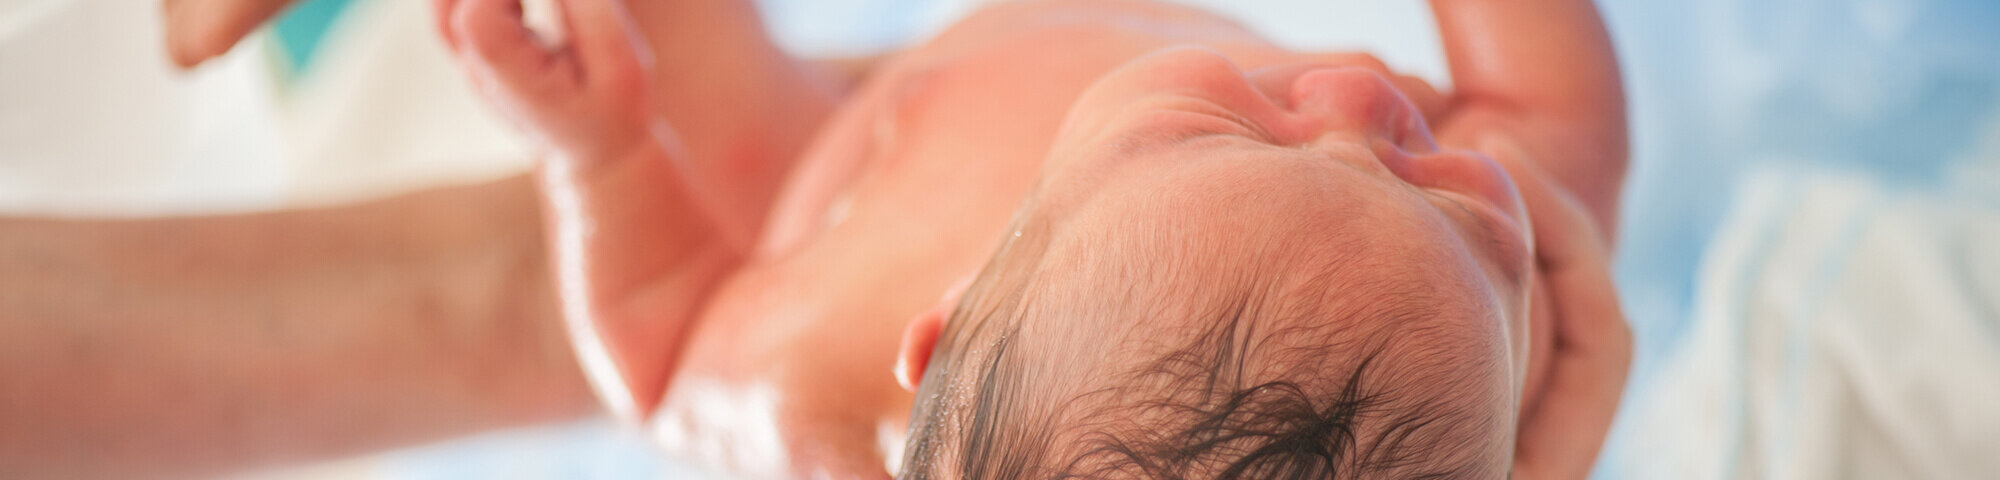 Neugeborenes kurz nach der Geburt in den Händen der Hebamme